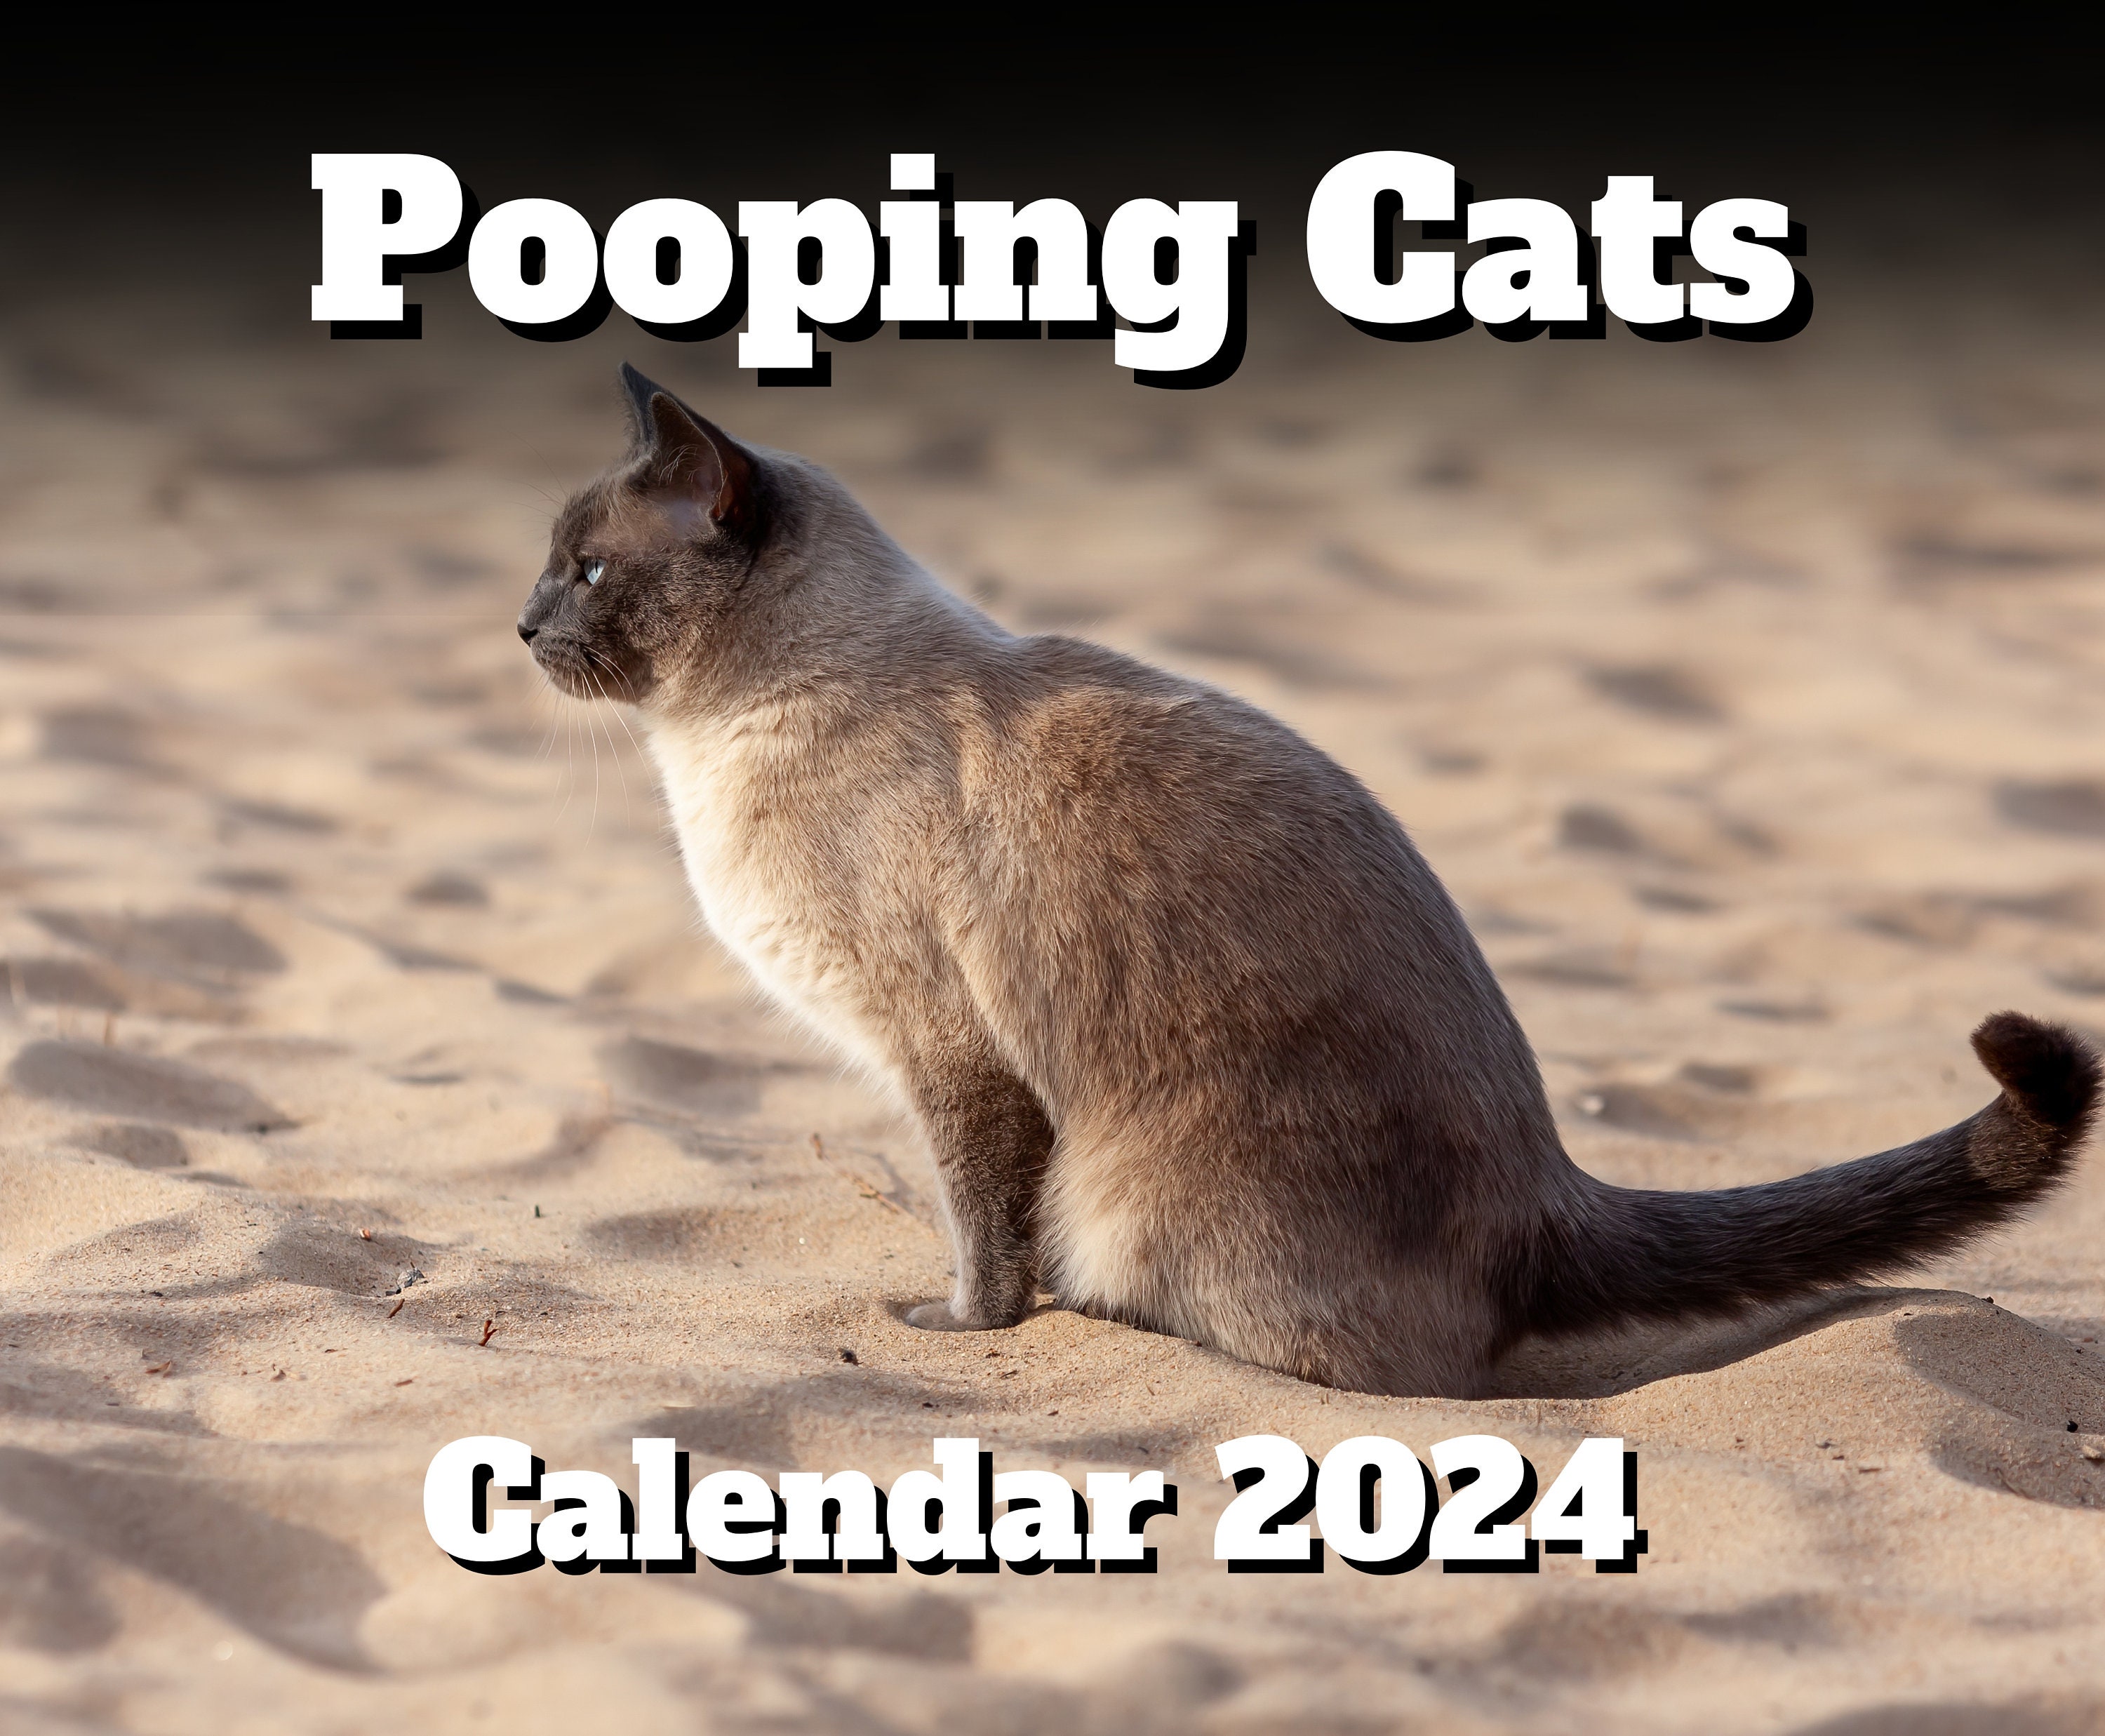 Calendrier 2024 Cat Balls, calendrier chat 12 mois à suspendre 2024 drôle,  calendrier mural 2024 mois à visualiser, calendrier mural mensuel 2024 avec